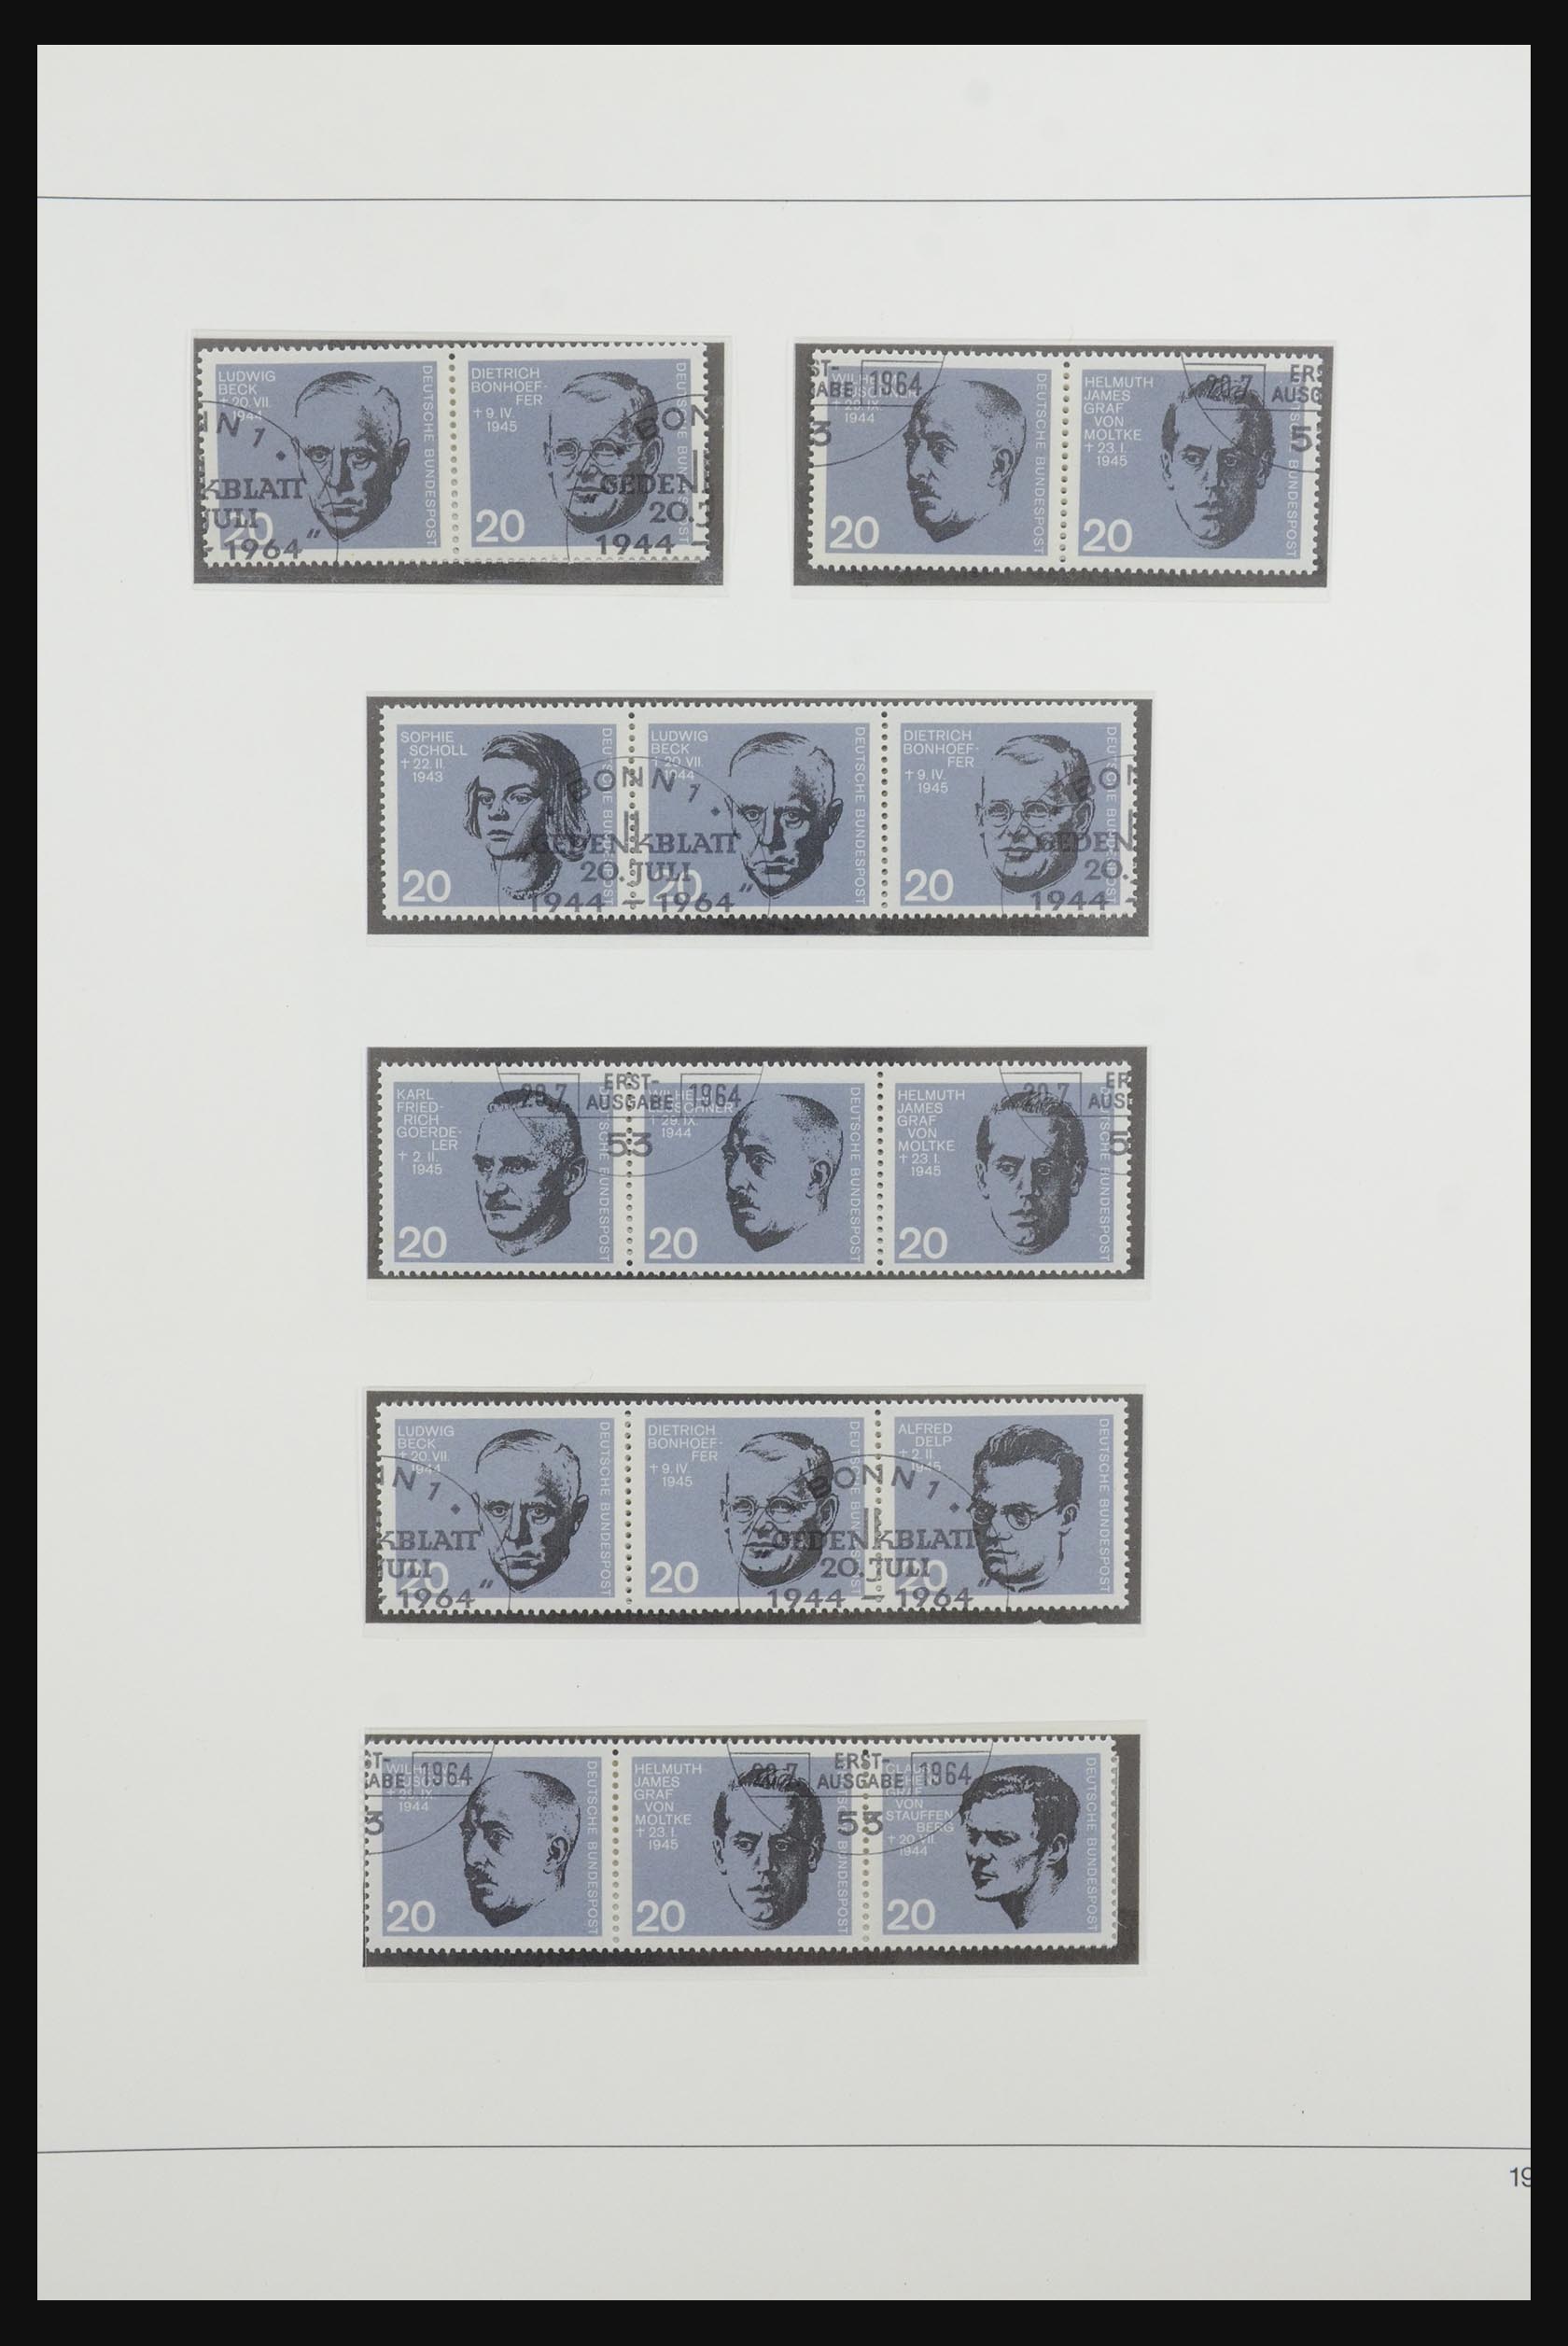 31842 026 - 31842 Bundespost combinations 1951-2003.